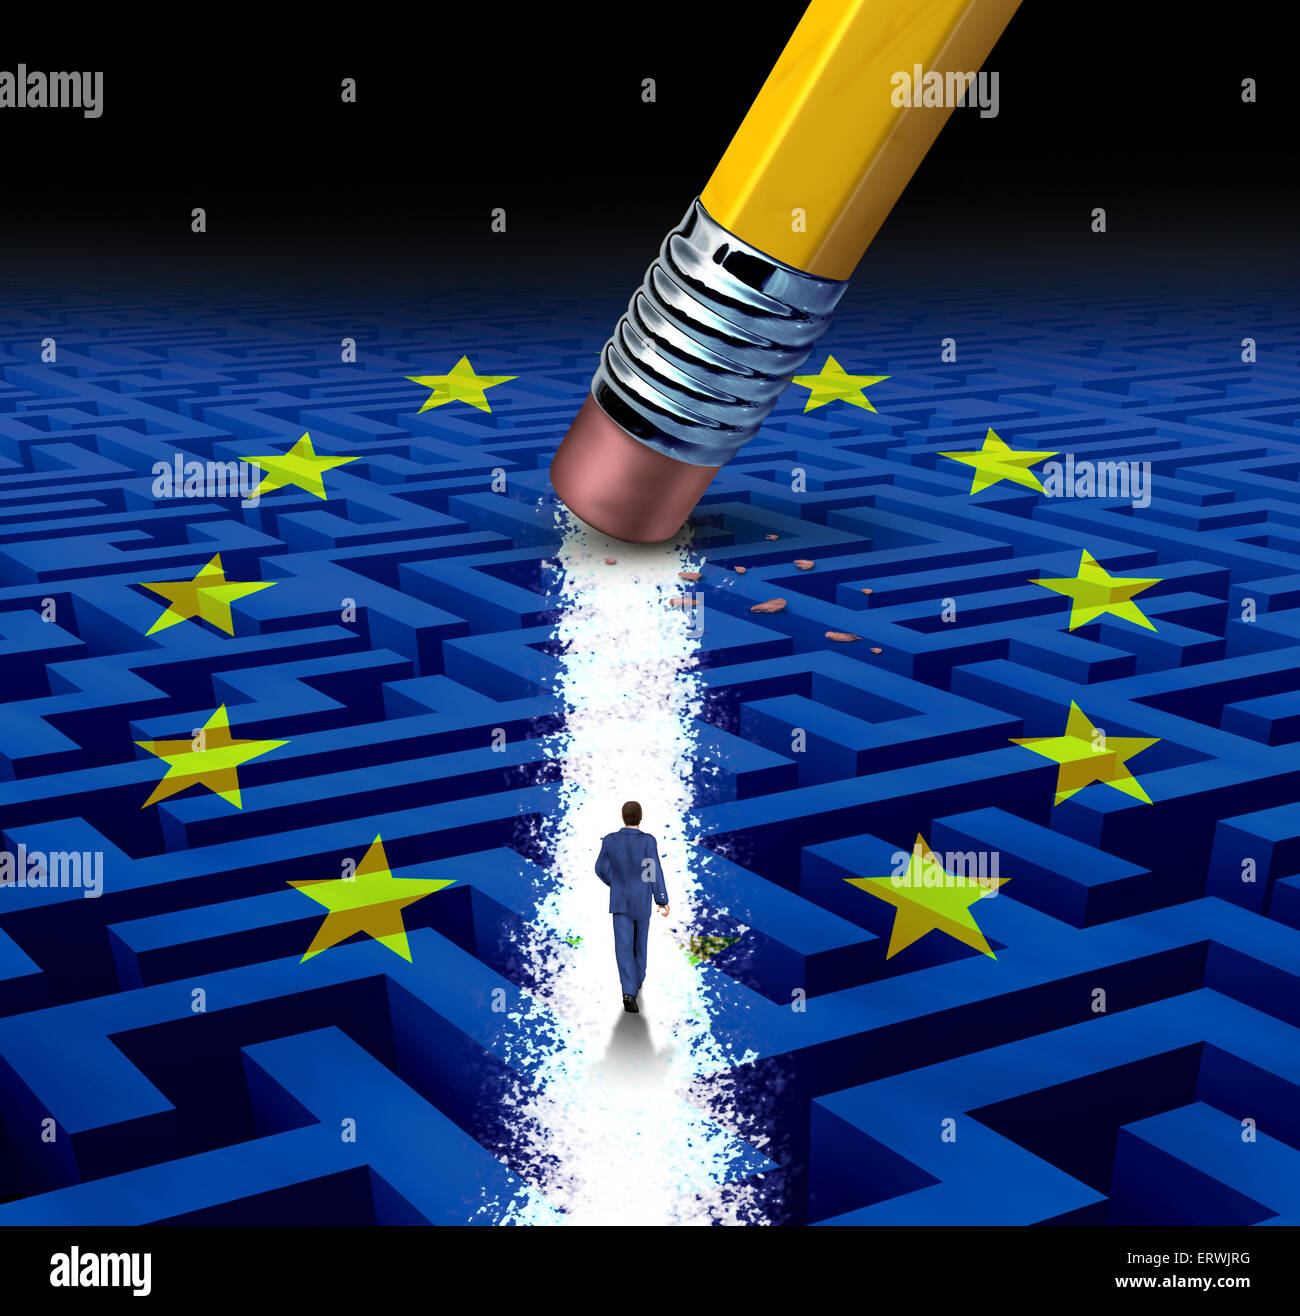 Europas führende Lösungen mit einem Geschäftsmann, ein Spaziergang durch ein kompliziertes Labyrinth mit europäischer Flagge eröffnet einen Radiergummi als ein Geschäftskonzept von innovativem Denken für den finanziellen Erfolg. Stockfoto